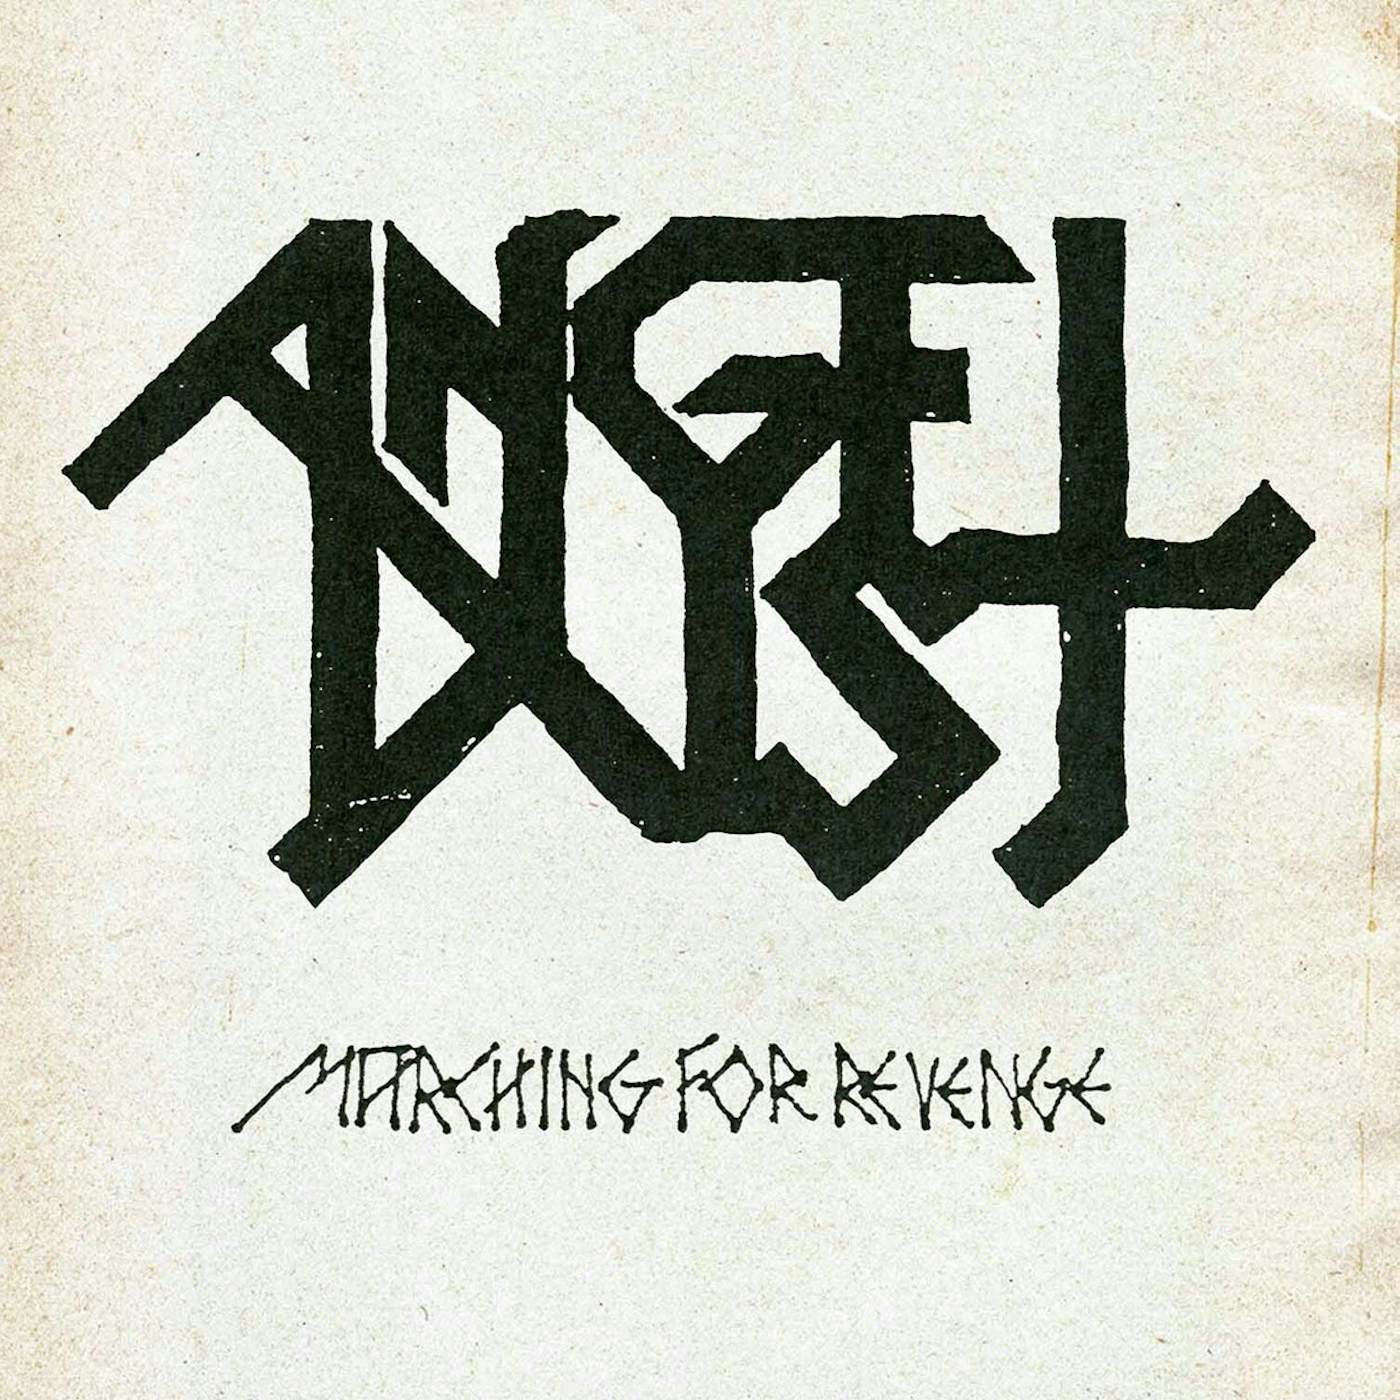  Angel Dust LP - Marching For Revenge (Vinyl)